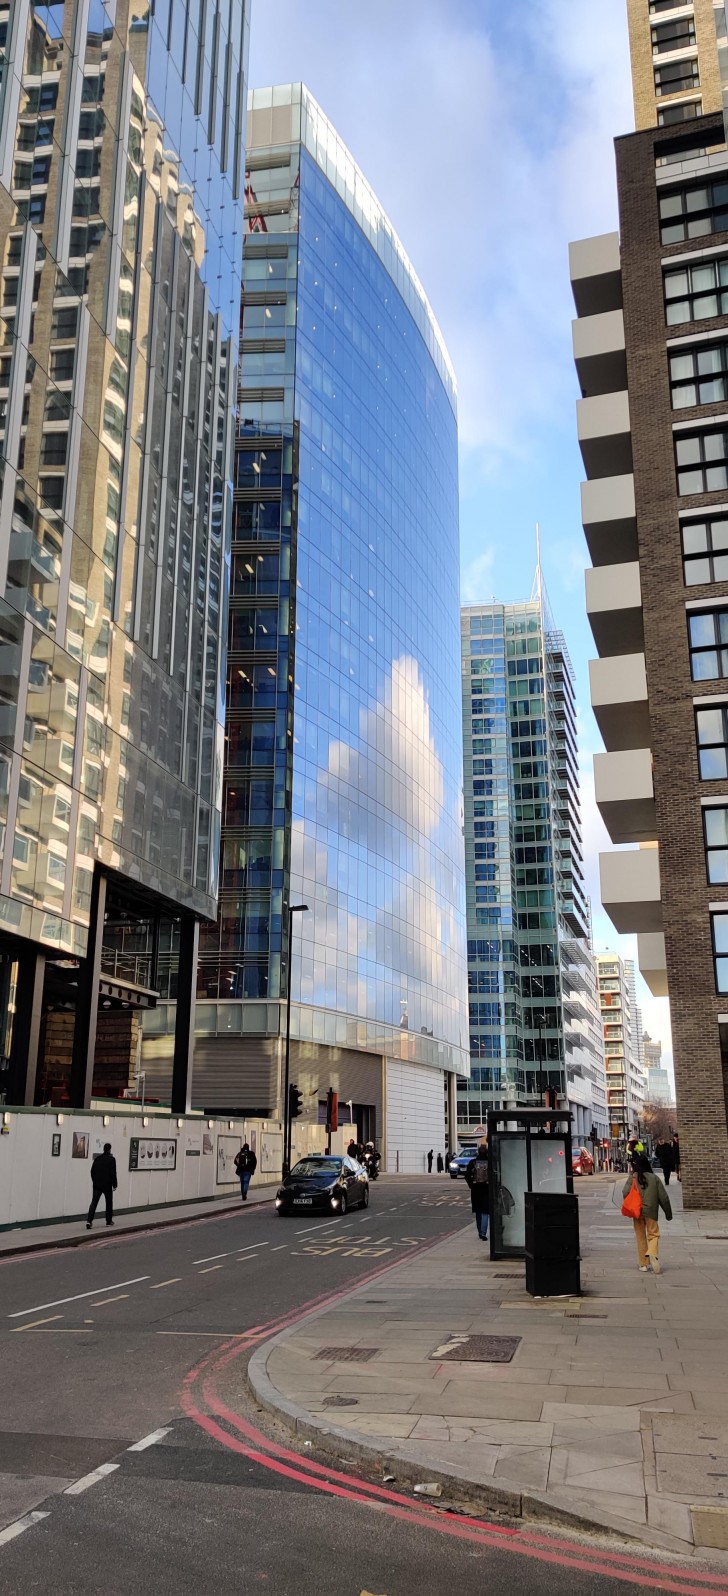 Le reflet des nuages sur la façade de ce gratte-ciel semble sortir des pixels d'un ordinateur !